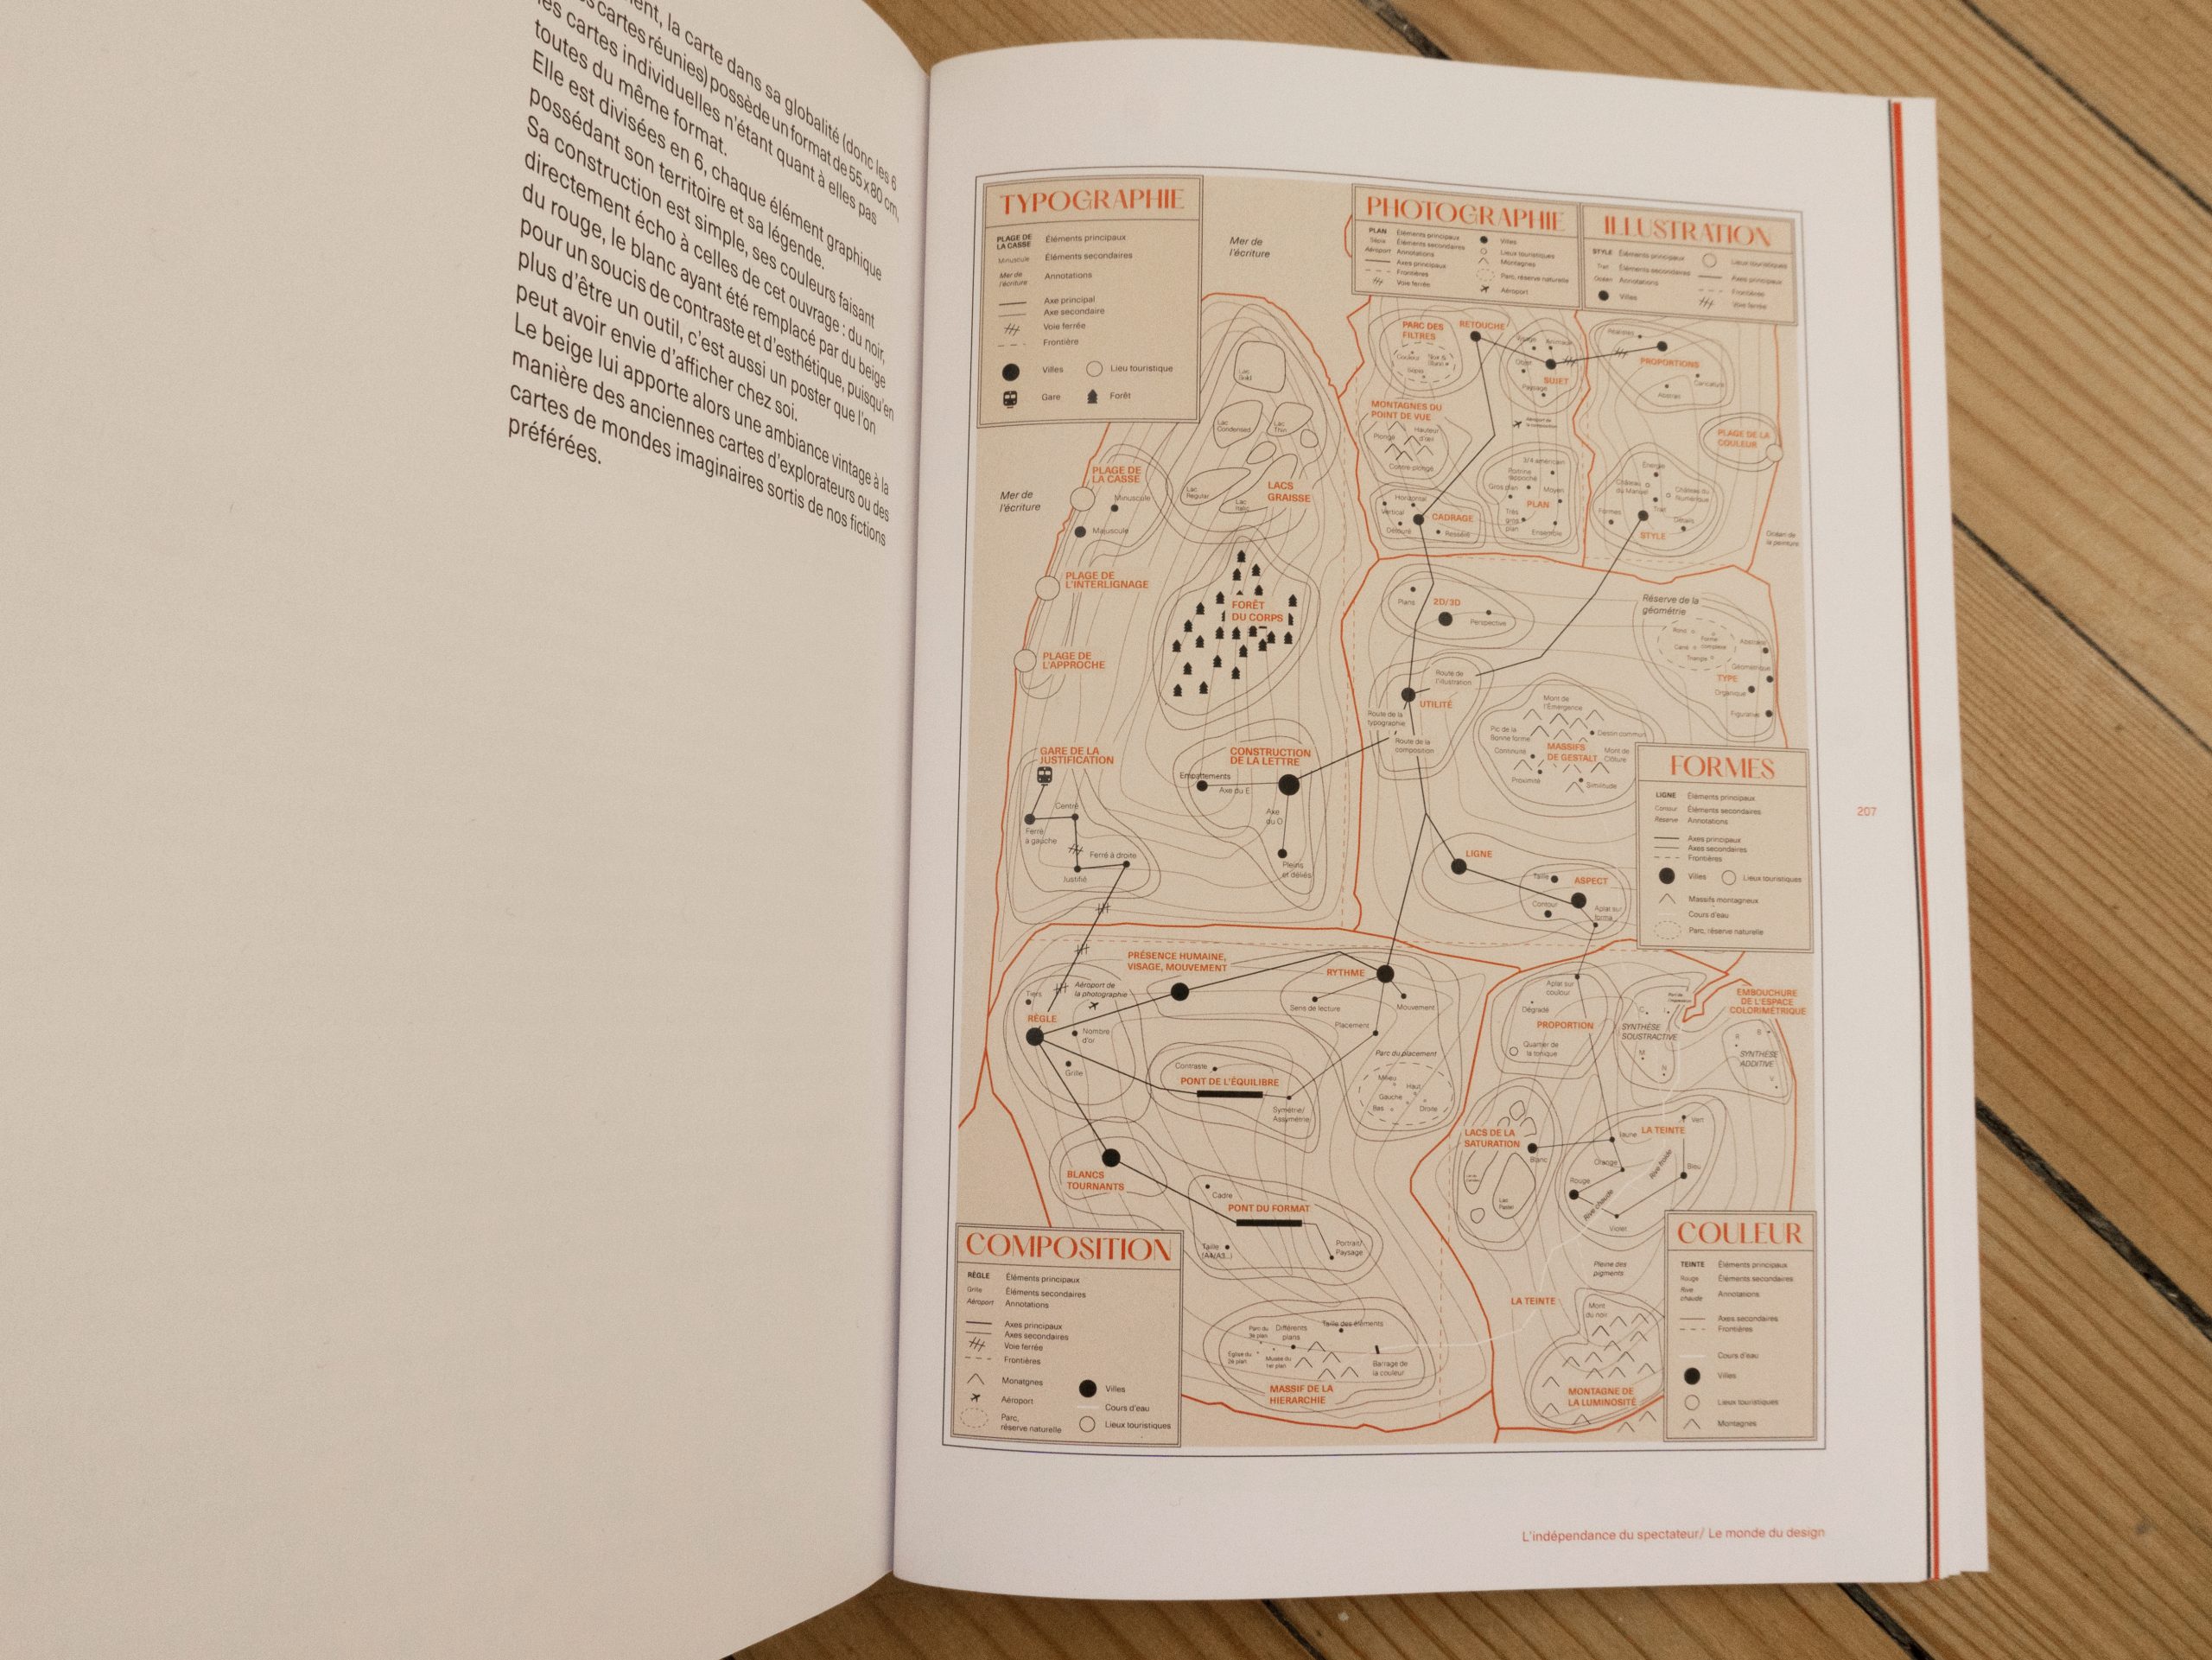 Visuel de l'intérieur du livre montrant l'intégralité de la carte "Le monde du design"